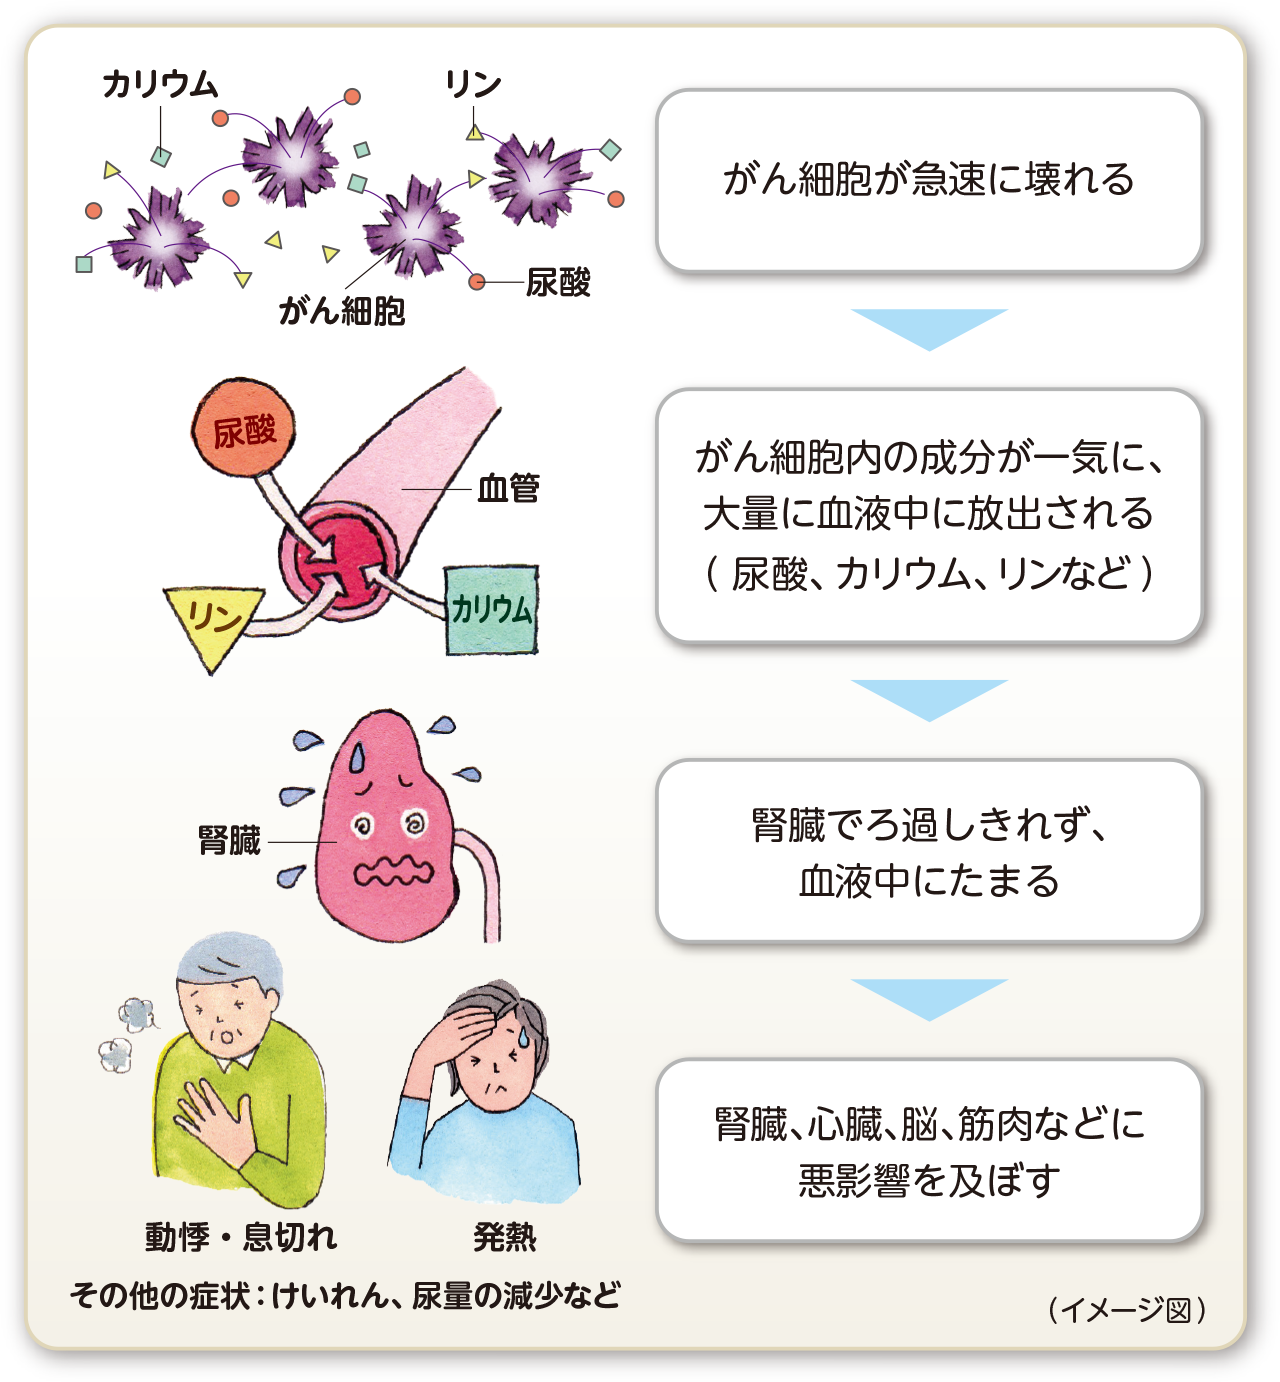 腫瘍細胞が急速に壊れる→大量の成分が血液中に放出（尿酸、カリウム、カルシウム、リンなど）→腎臓でろ過しきれず血液中にたまる